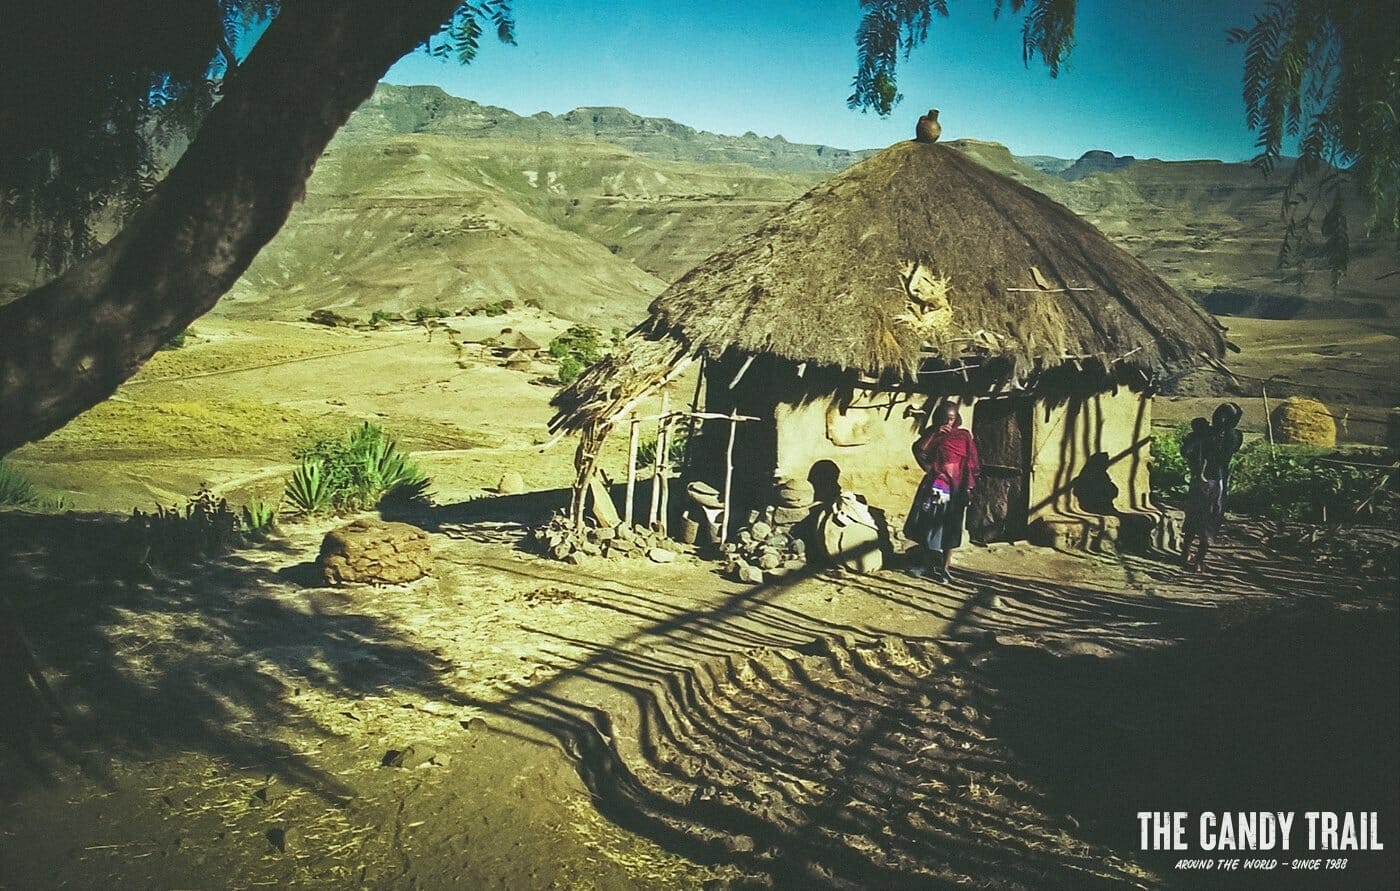 thatch house in mountains near lalibela ethiopia 1994